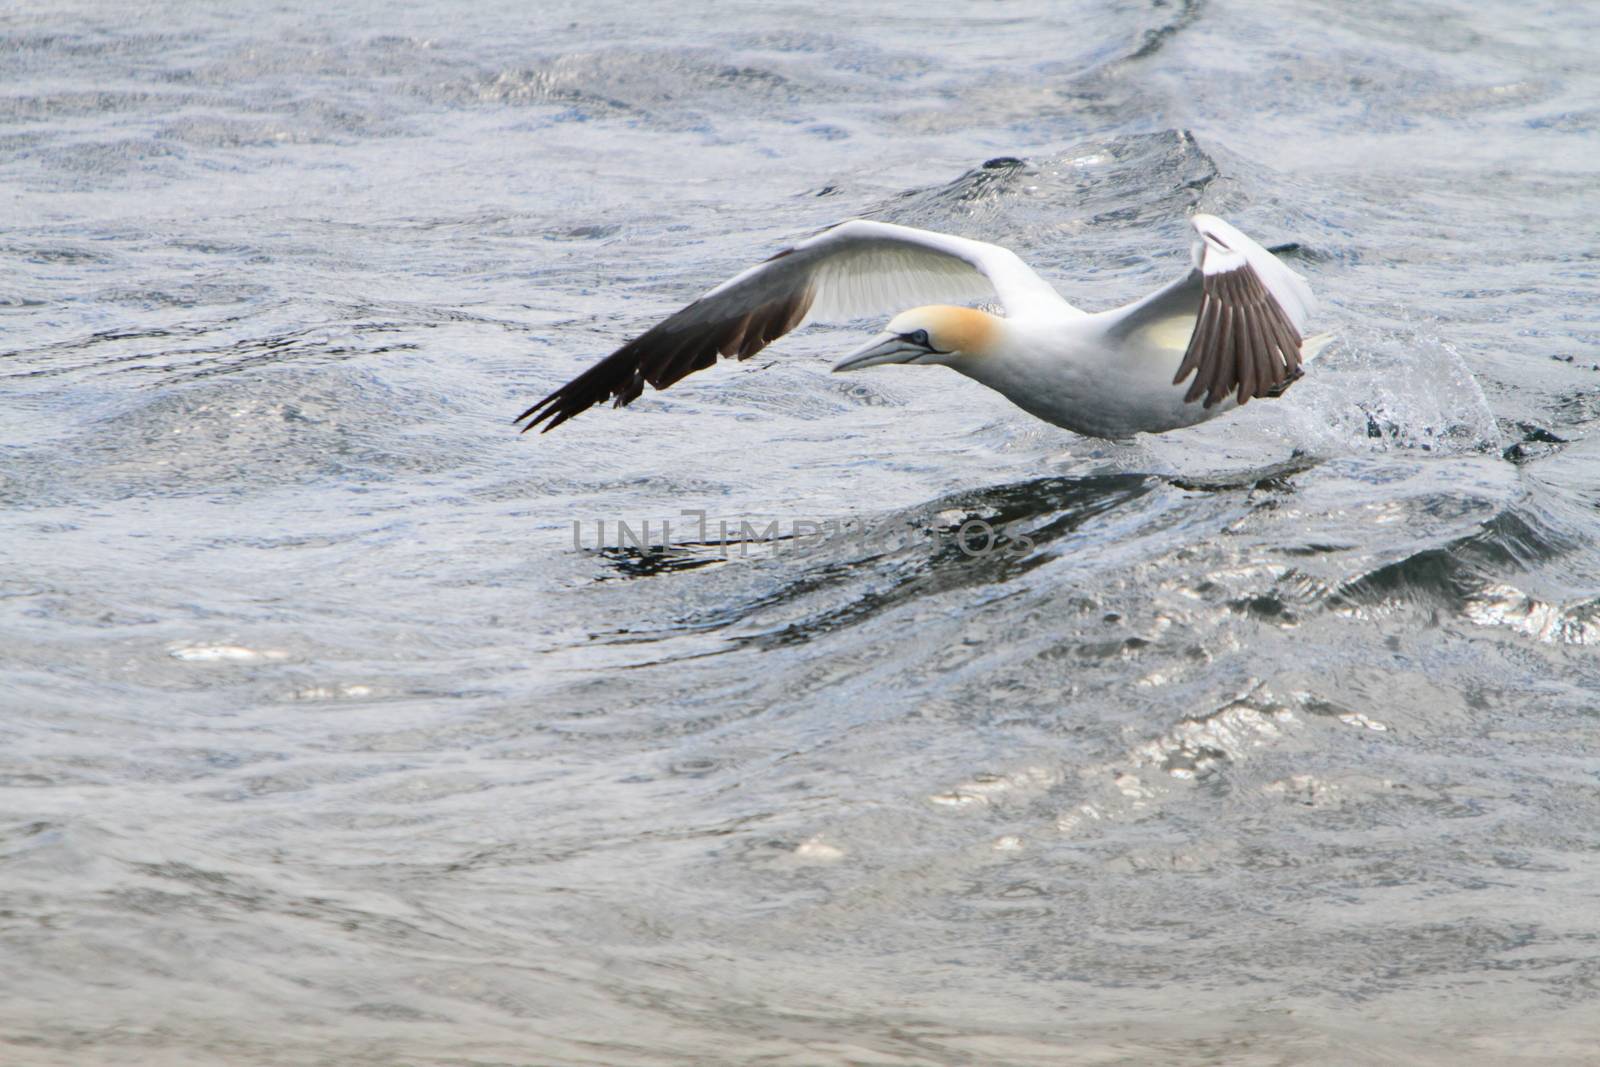 Gannet taking off